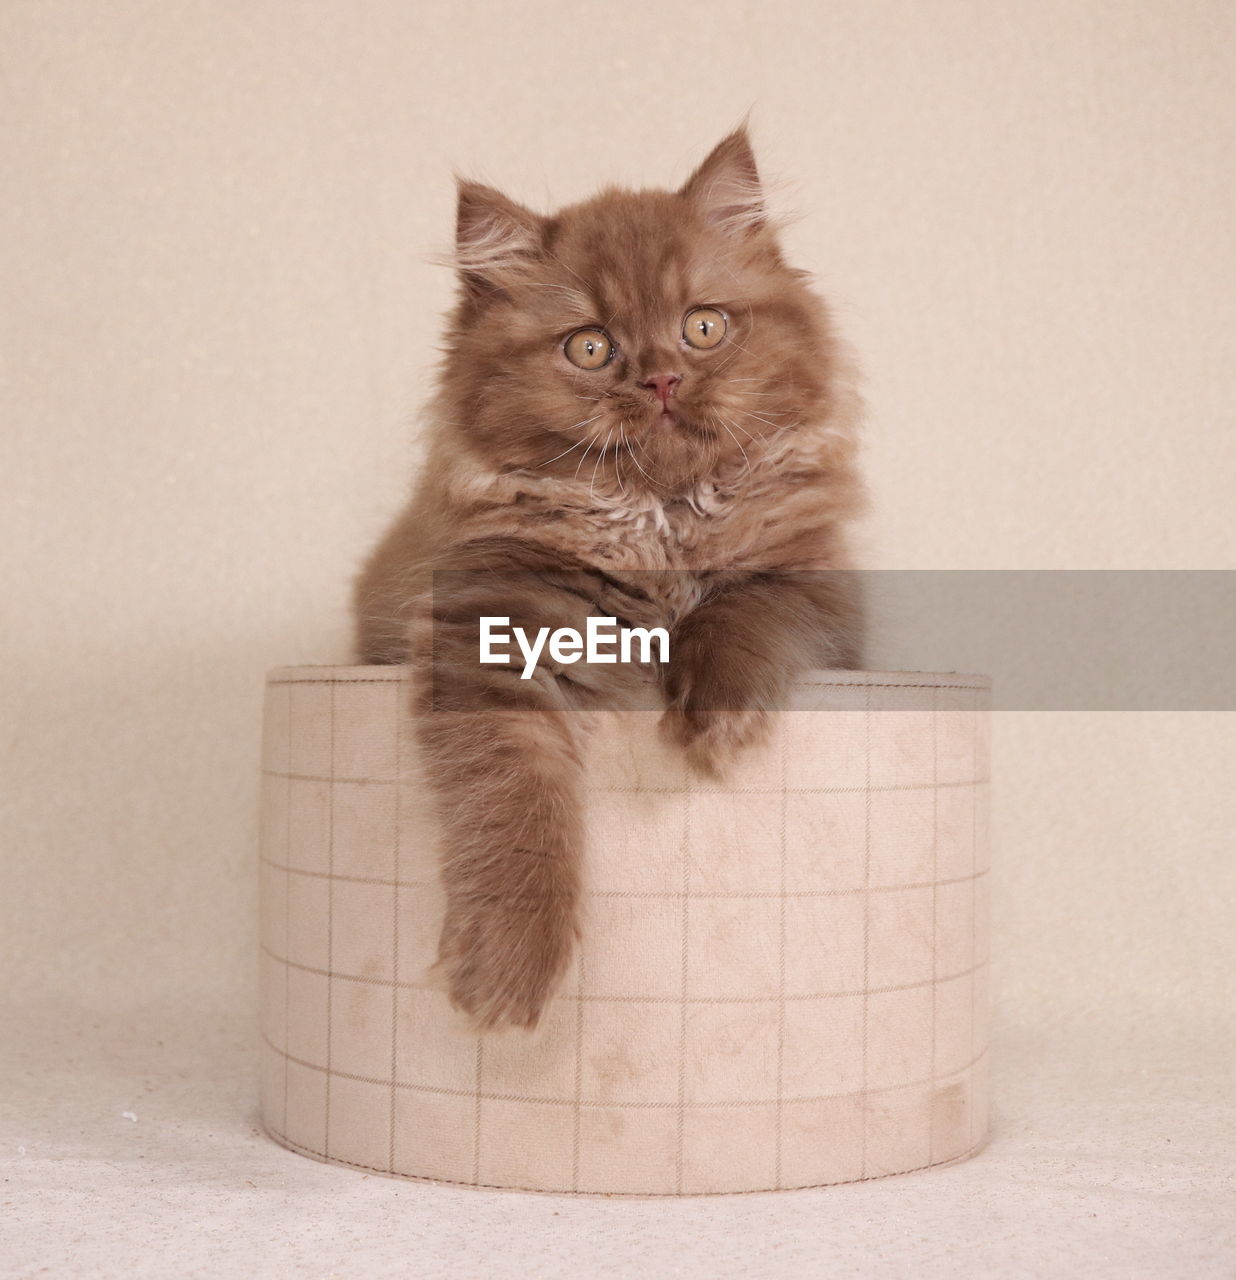 PORTRAIT OF A CAT IN A BOX